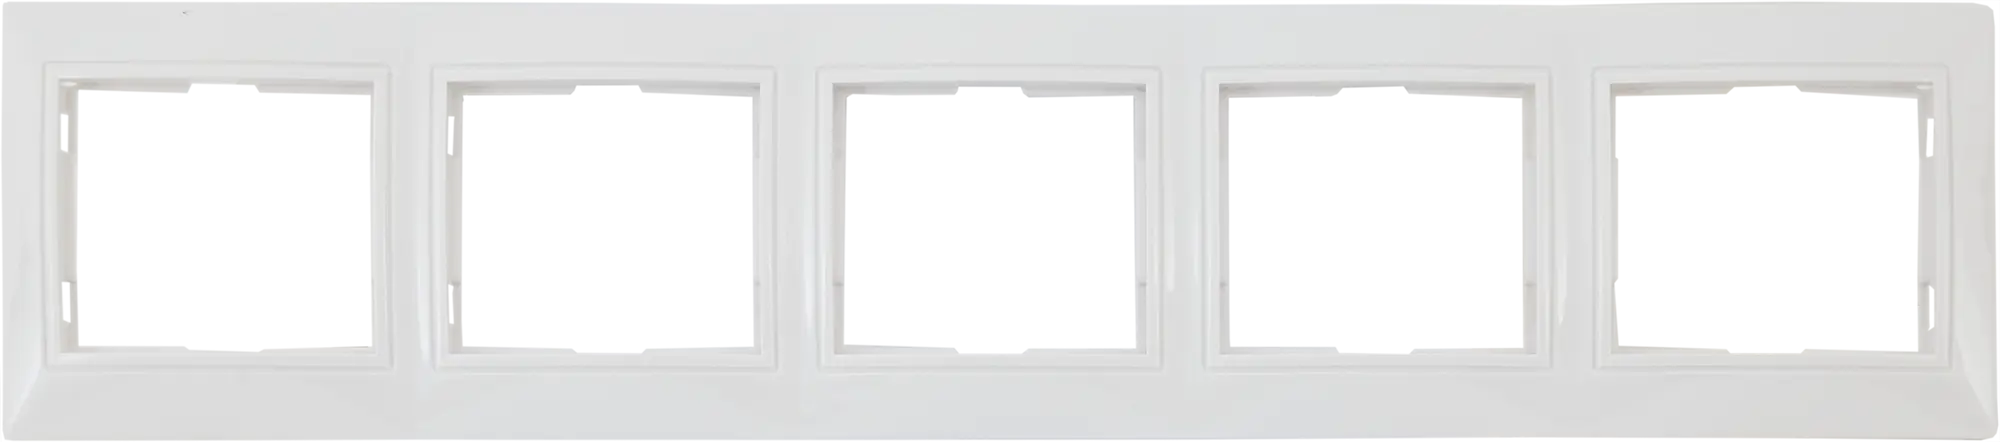 Рамка для розеток и выключателей горизонтальная Таймыр 5 постов, цвет белый